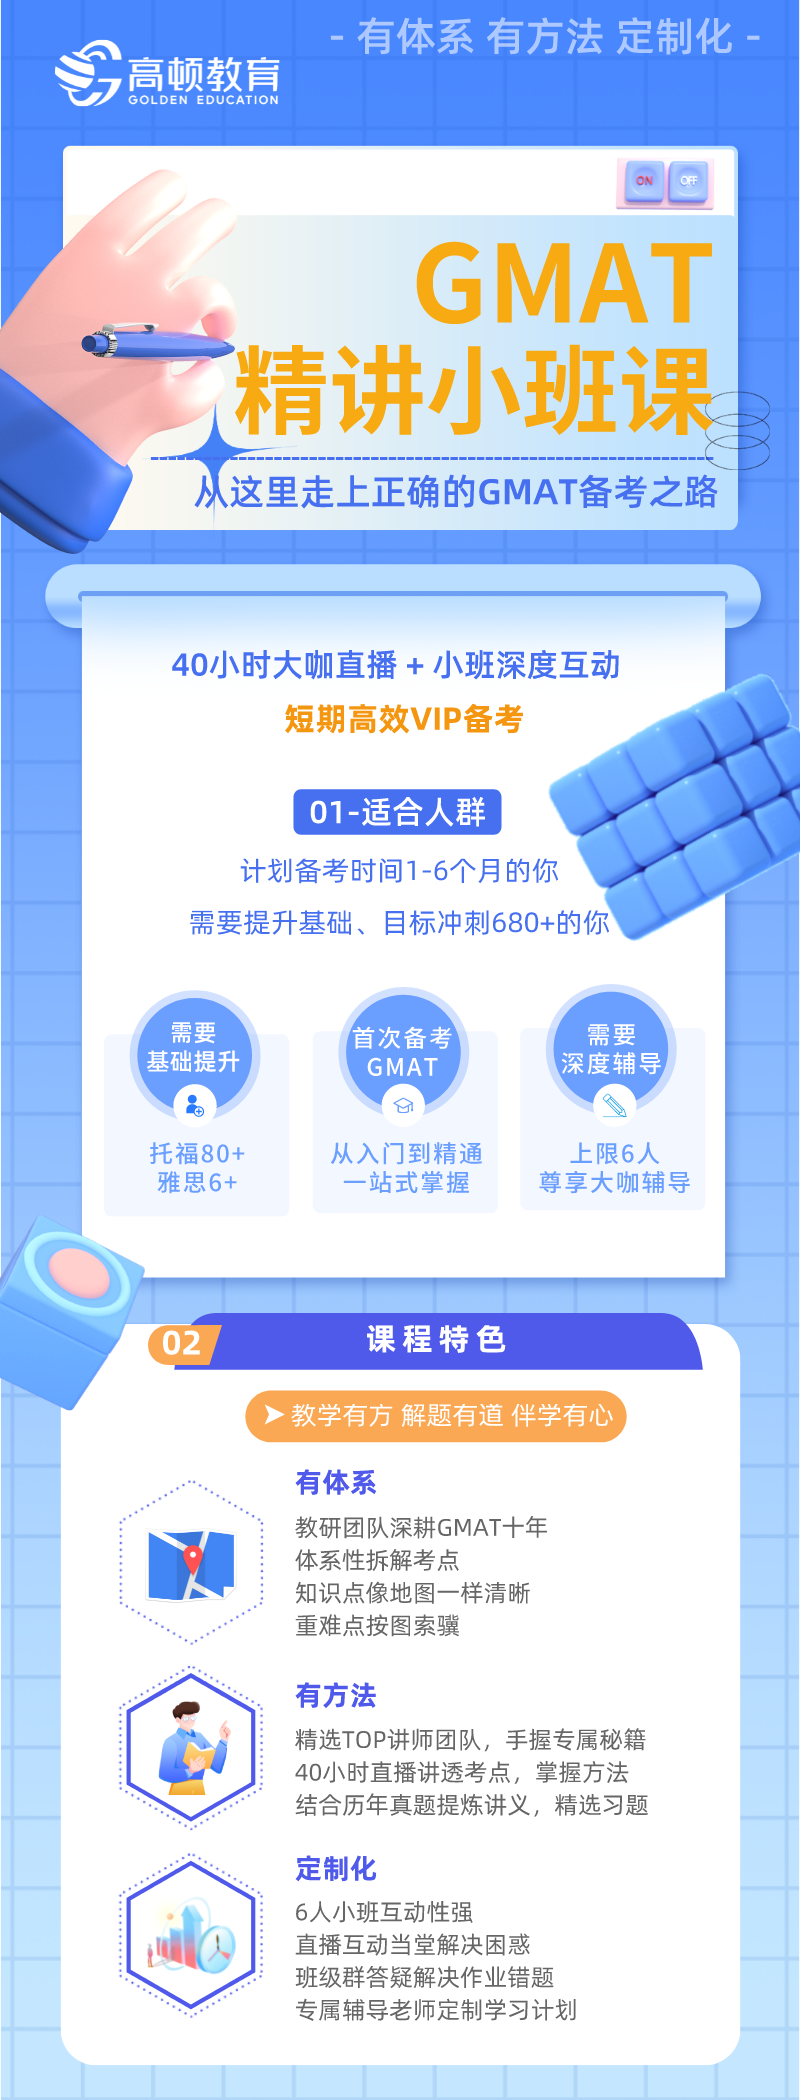 https://simg01.gaodunwangxiao.com/uploadfiles/product-center/202212/15/e817c_20221215145418.png